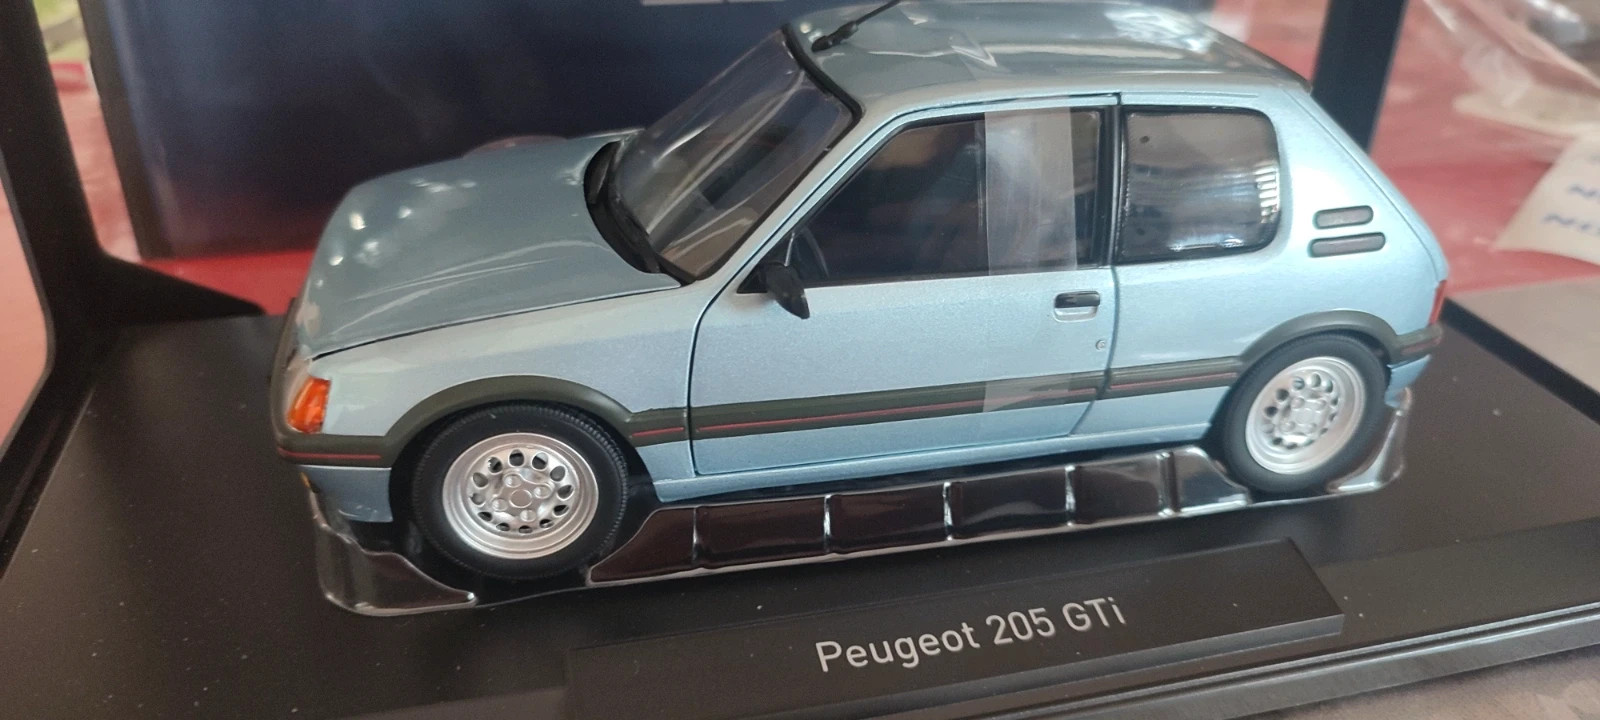 Miniature Peugeot 205 Gti | Vinted